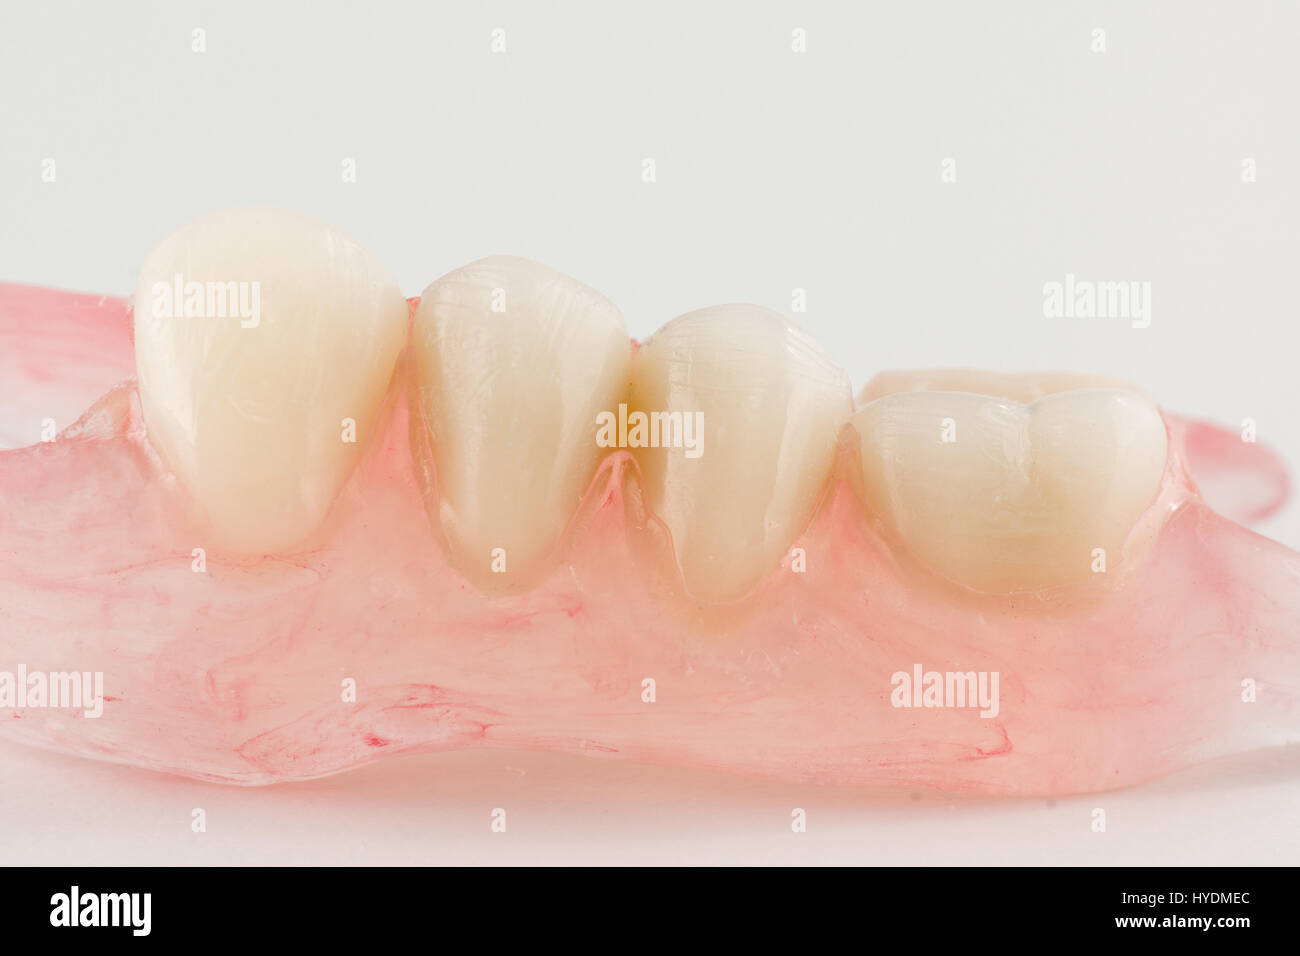 modern nylon removable dental prosthesis for restoring dentition Stock Photo